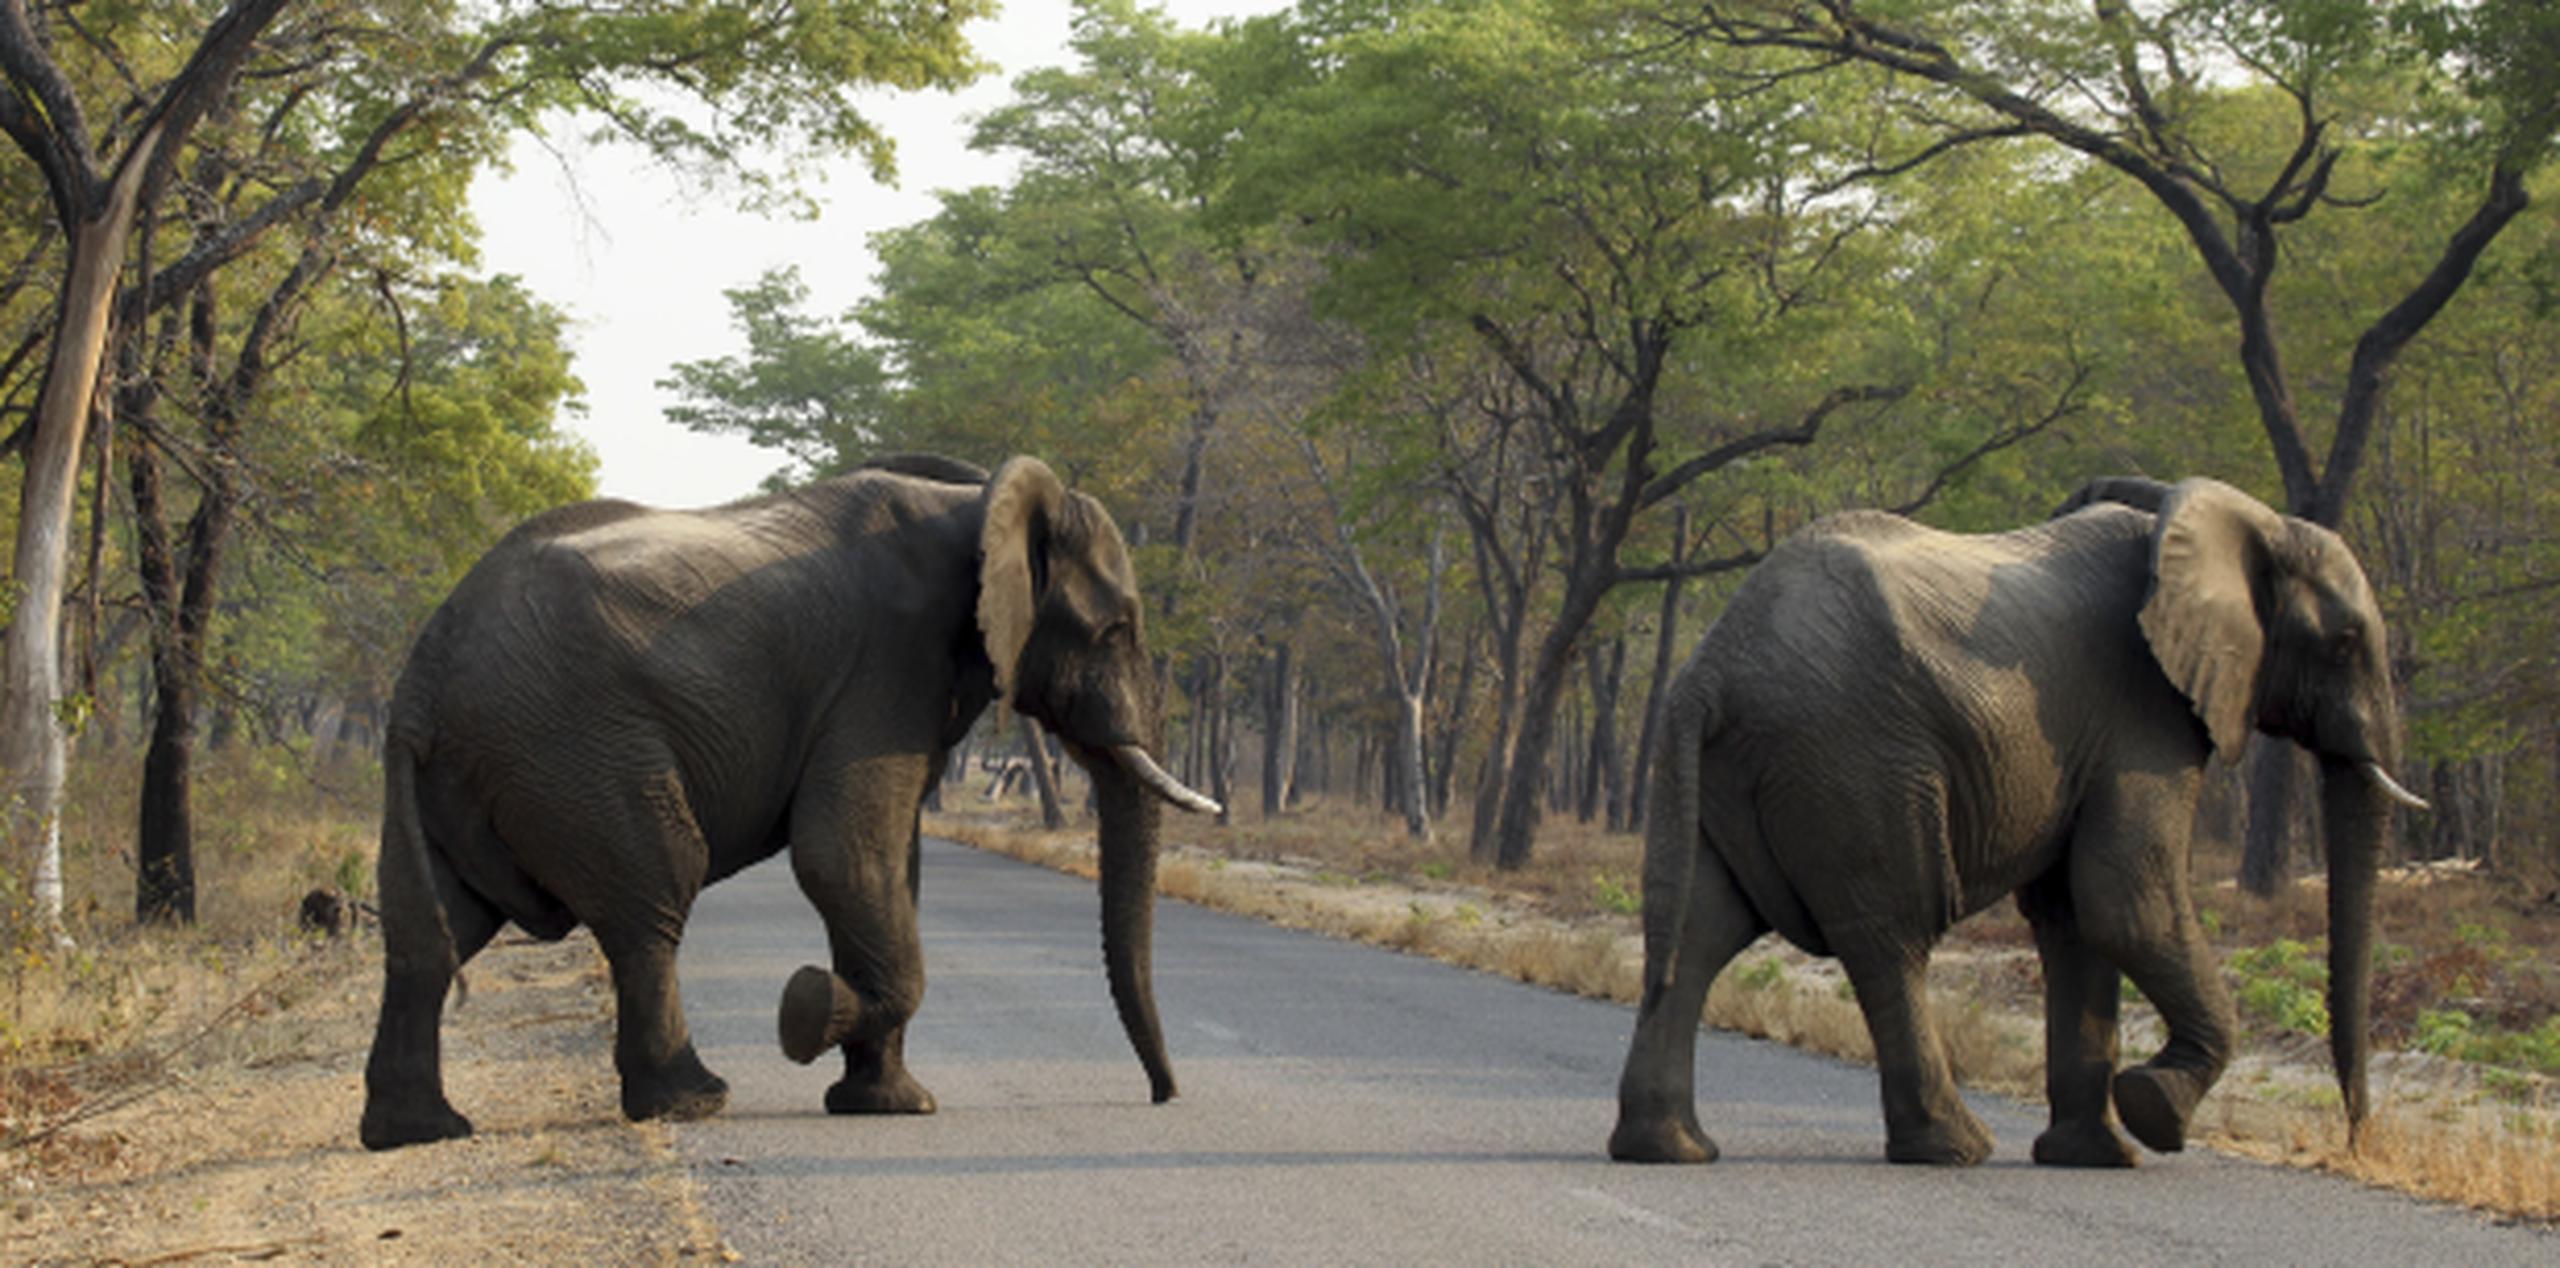 La venta de 35 elefantes a China por parte de Zimbabue fue criticada por grupos conservacionistas por el secretismo con que se manejó y por considerarlas antiéticas. (Archivo)
